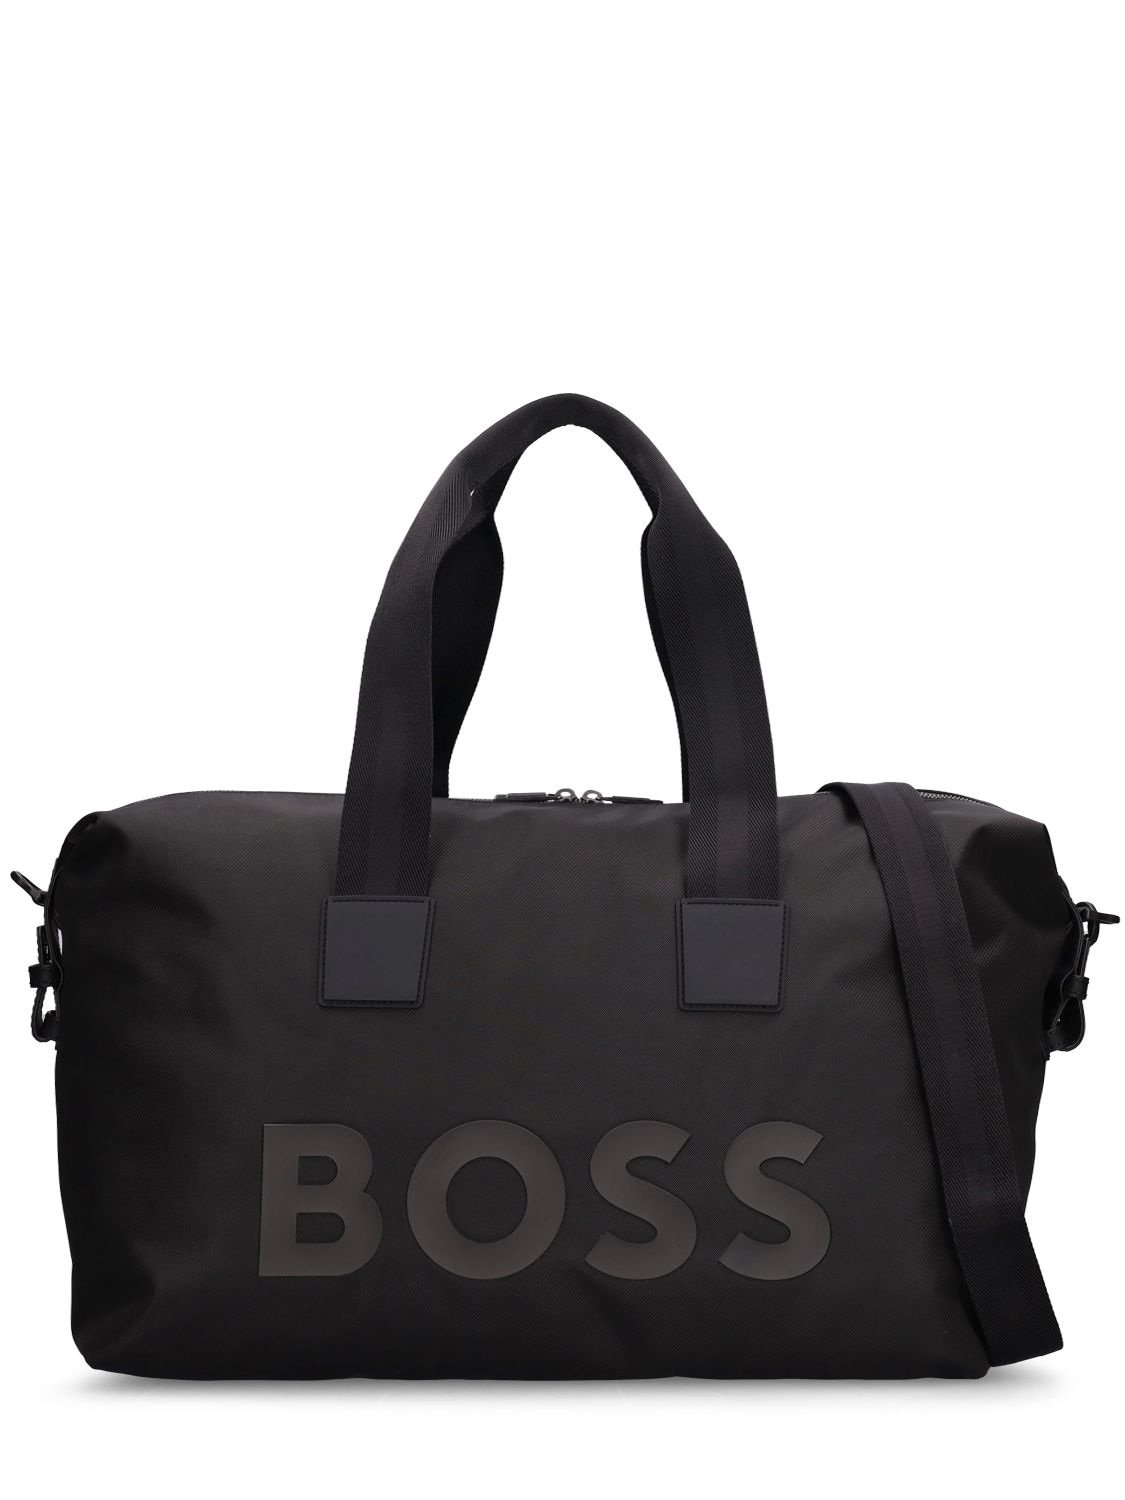 BOSS Catch Logo Duffle Bag